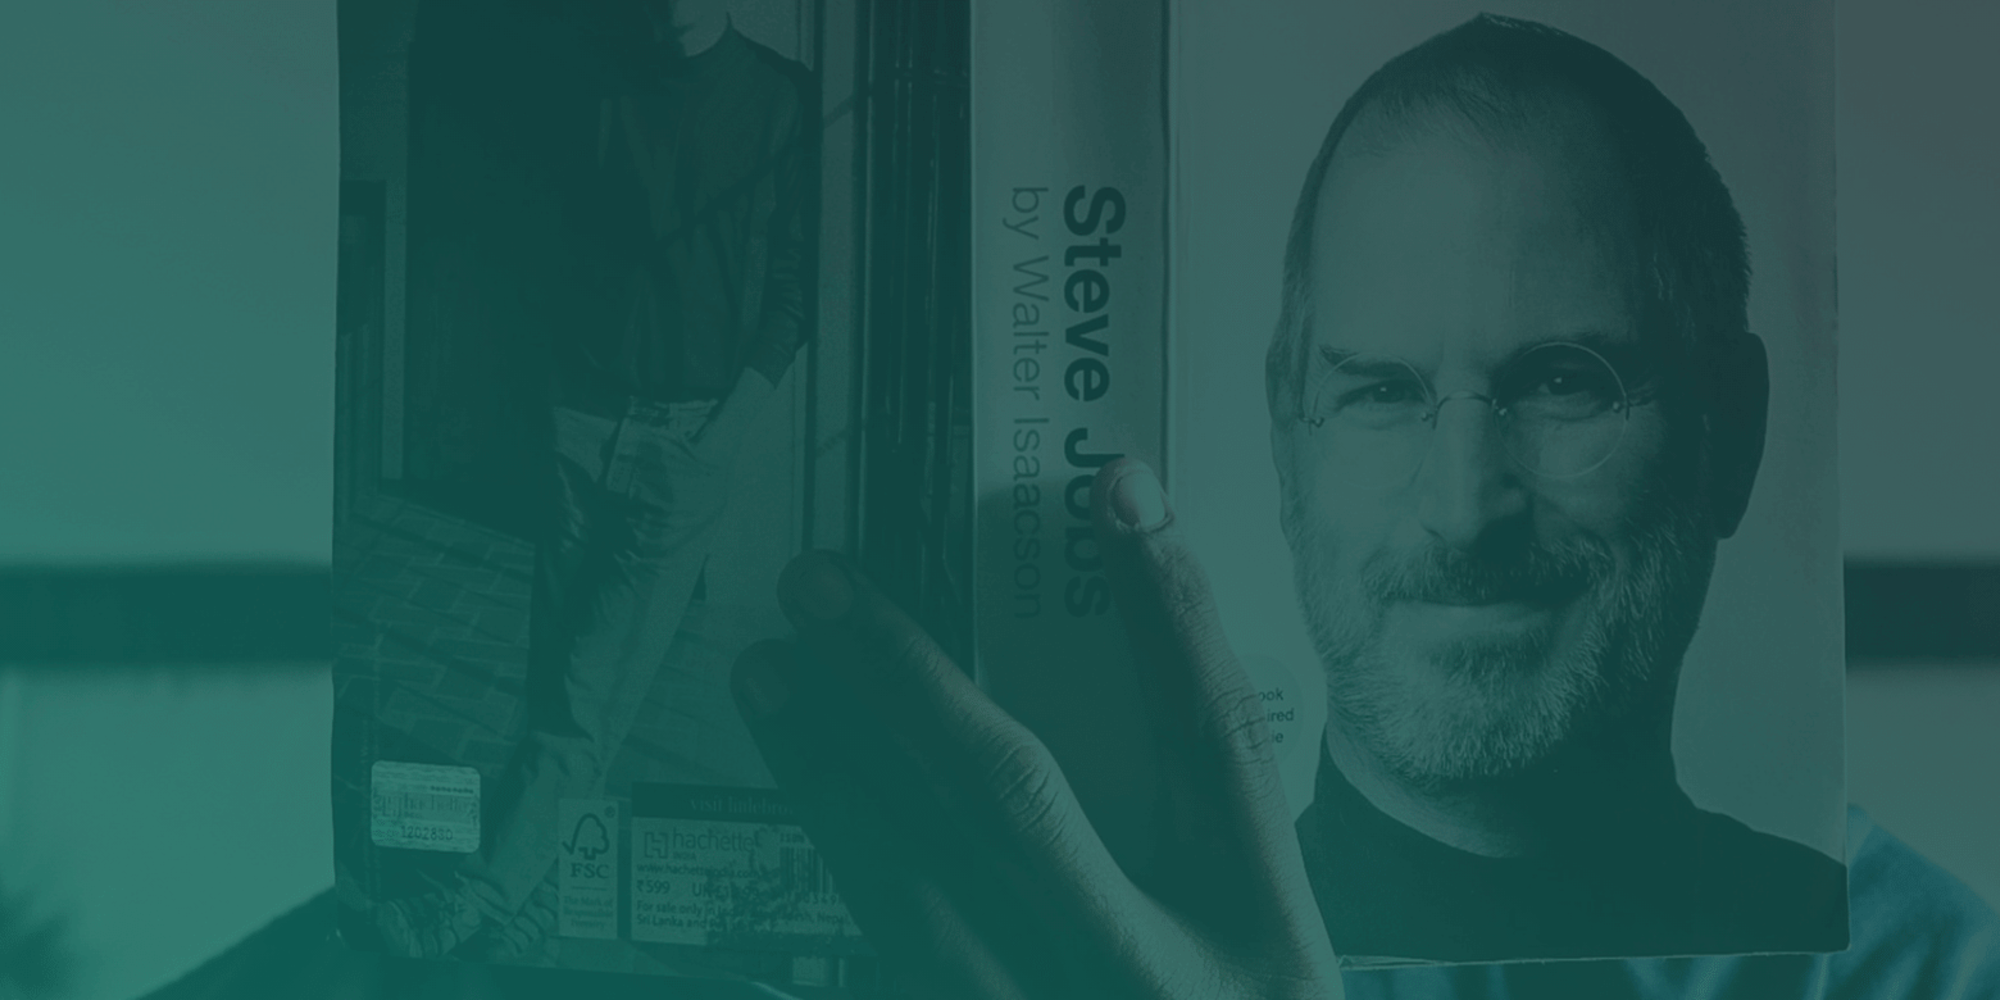 How Does The Cv Of Steve Jobs Look Like